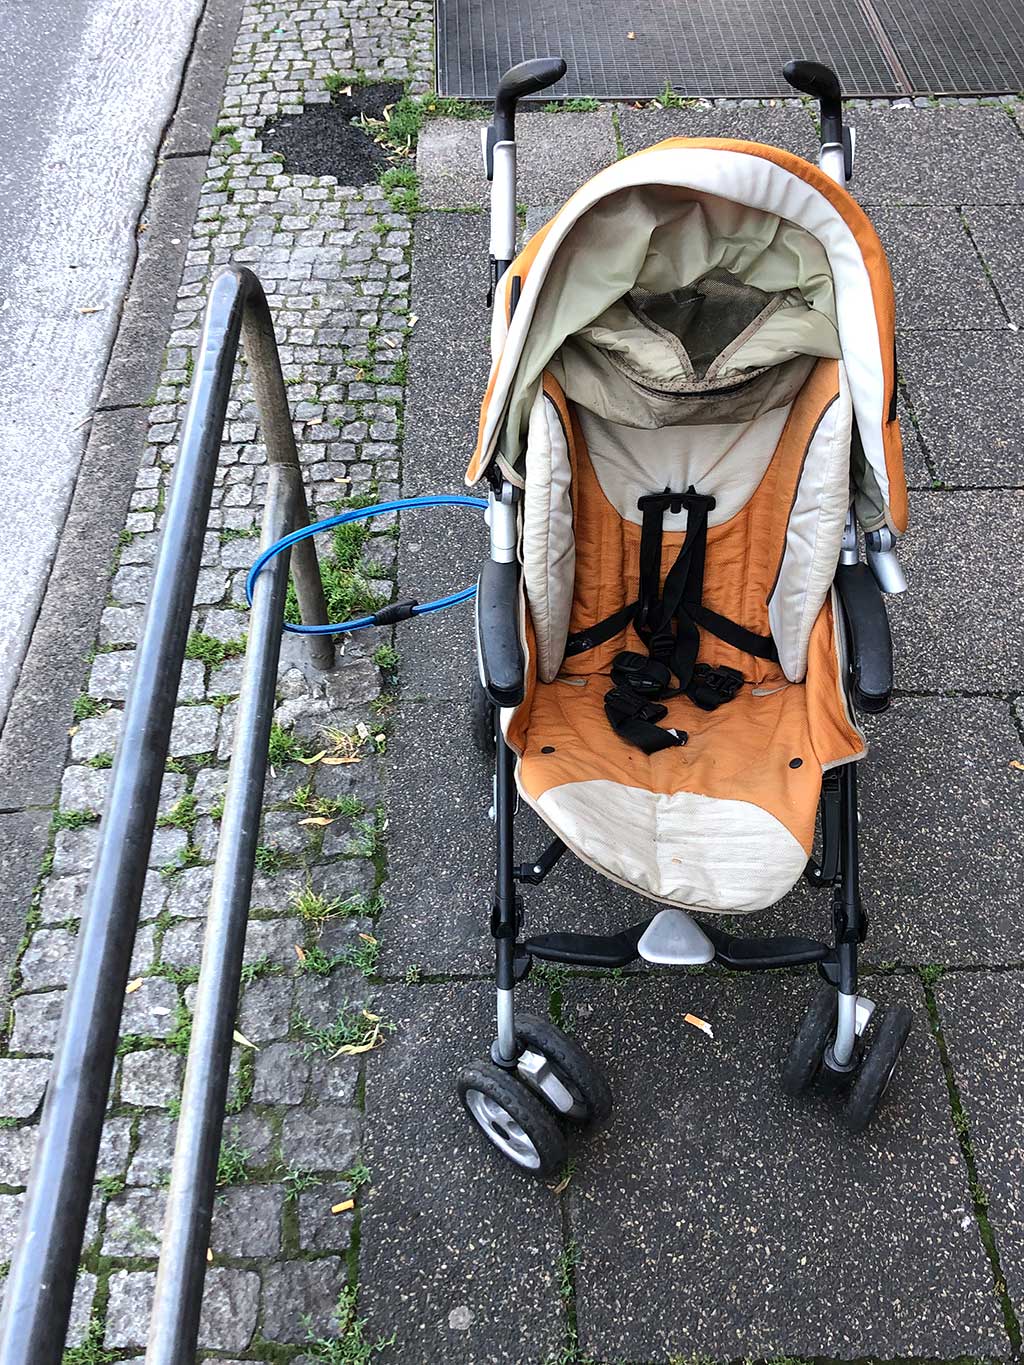 Stadtbilder Frankfurt - Mit Fahrradschloß gesicherter Kinderwagen